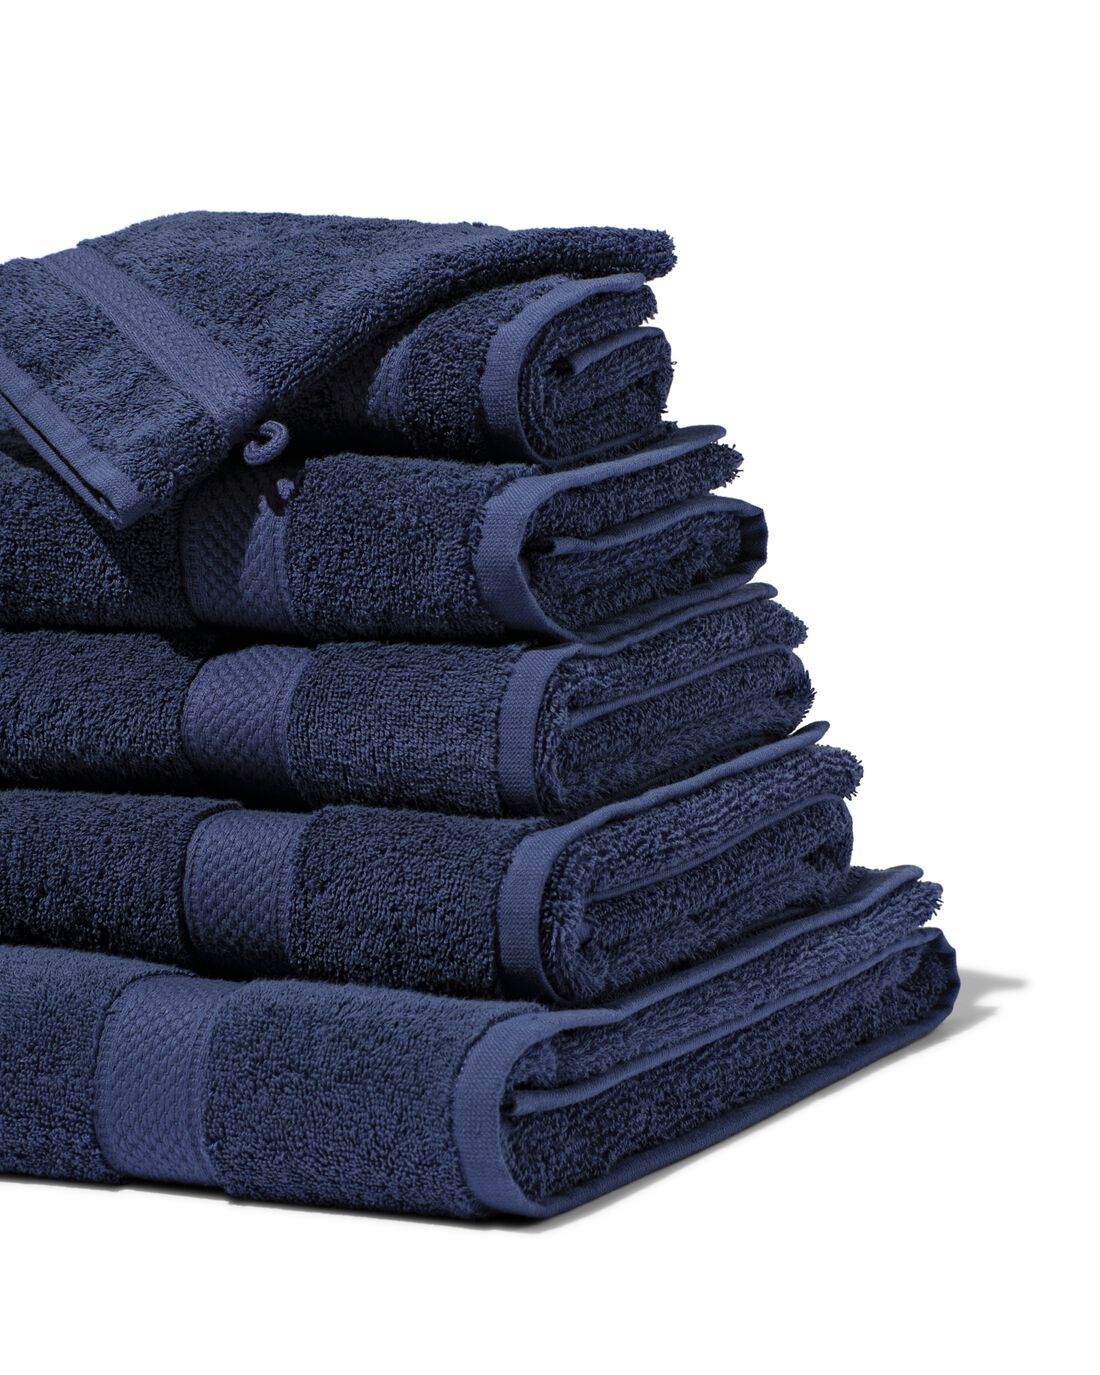 HEMA Handdoeken Zware Kwaliteit Nachtblauw (nachtblauw)